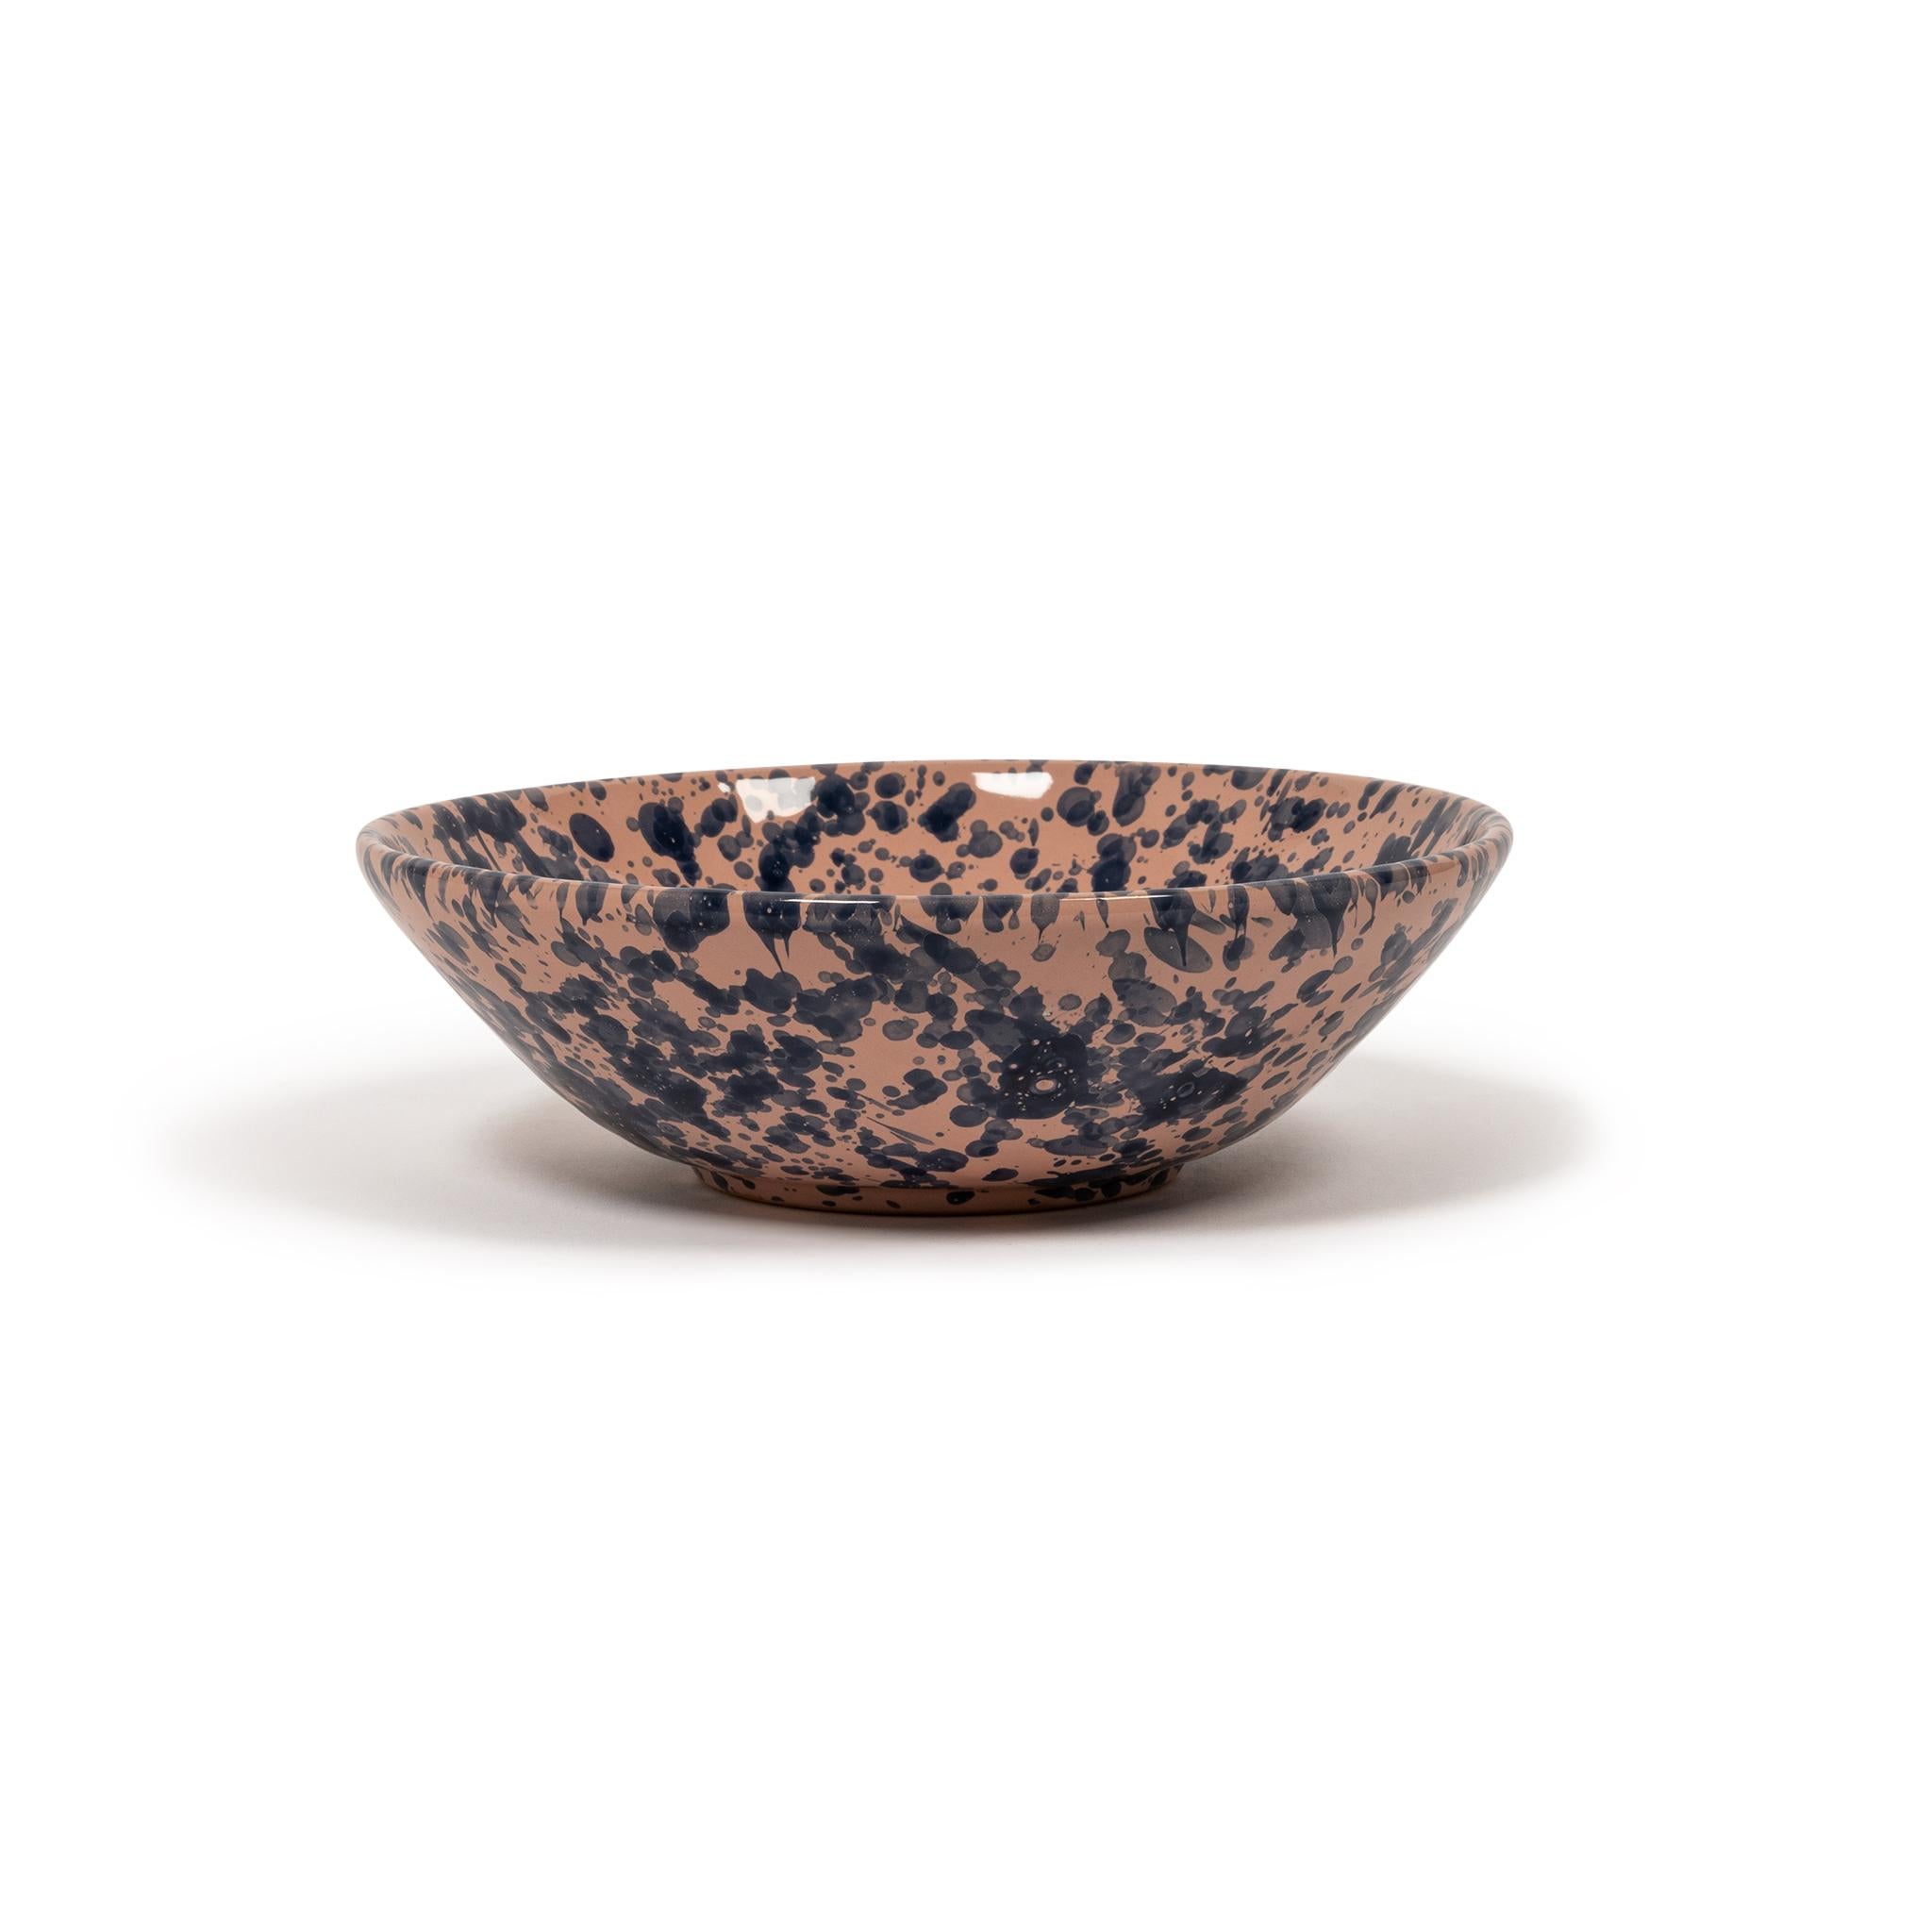 Splatter Bowl, Large, Tan & Ivory, Modern Rustic Design, Large Pasta Bowl, Chic 4